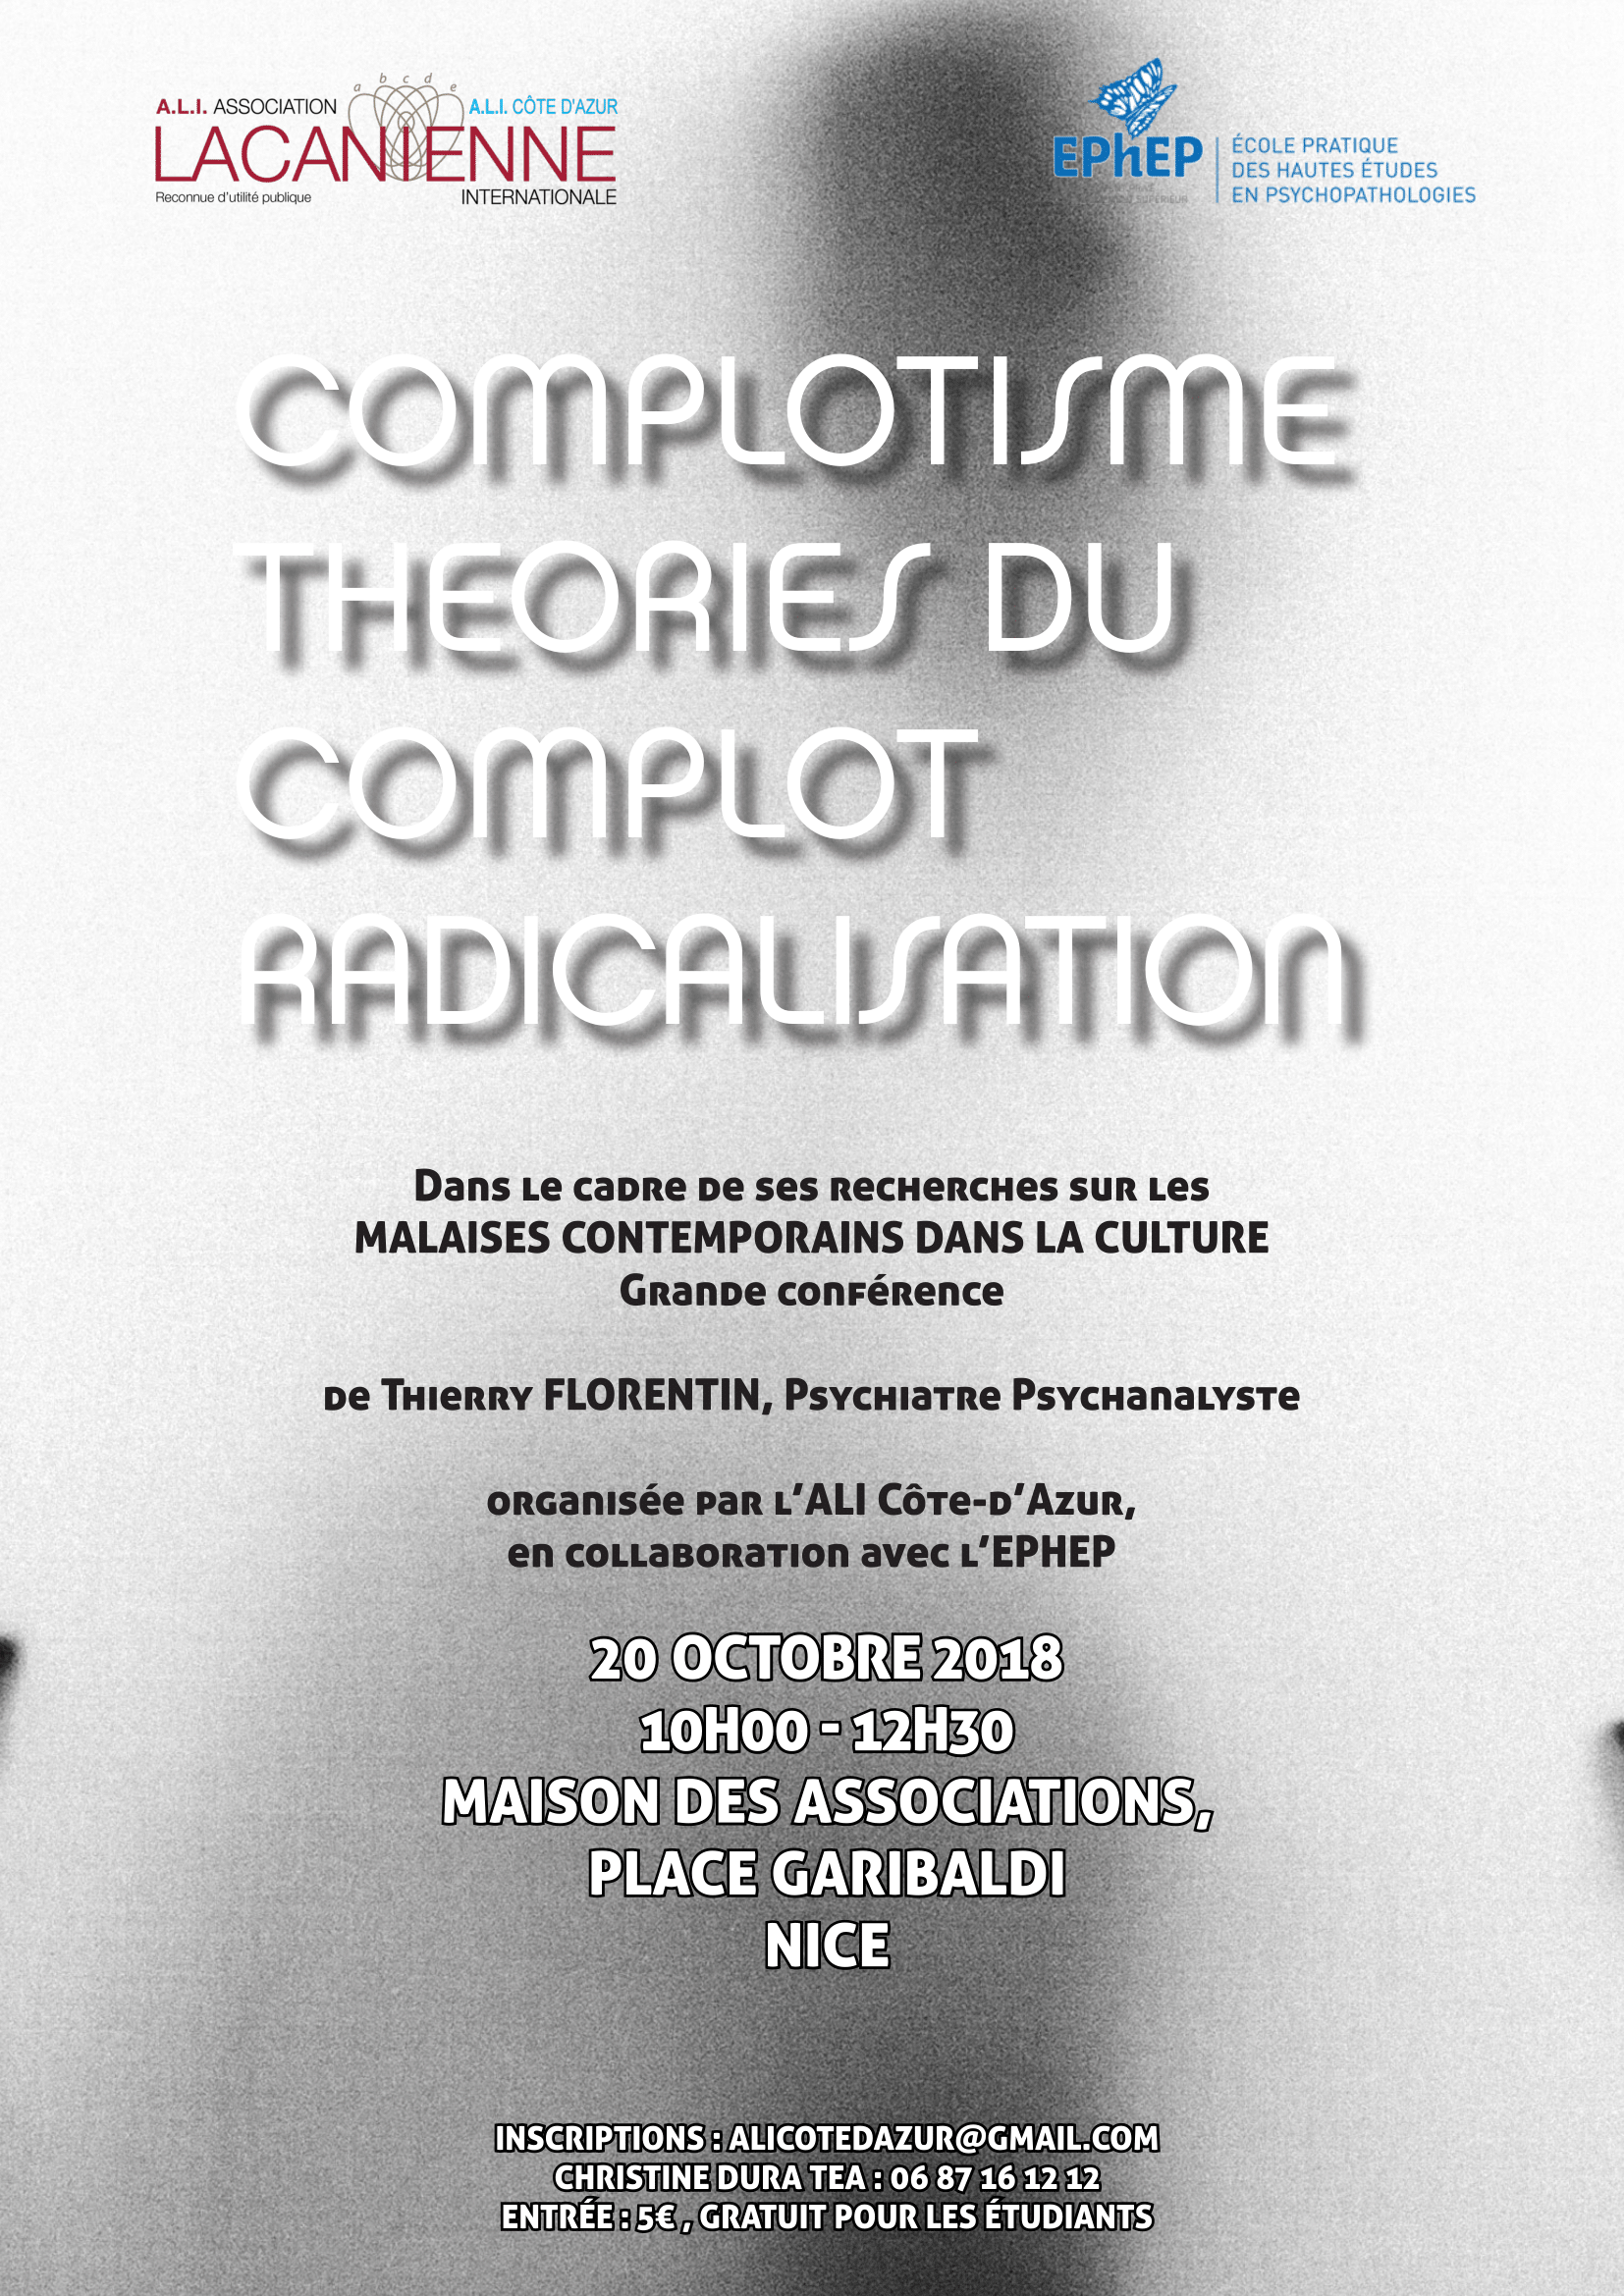 Grande conférence à Nice le 13 octobre 2018 "Complotisme, Théories du complot, radications"